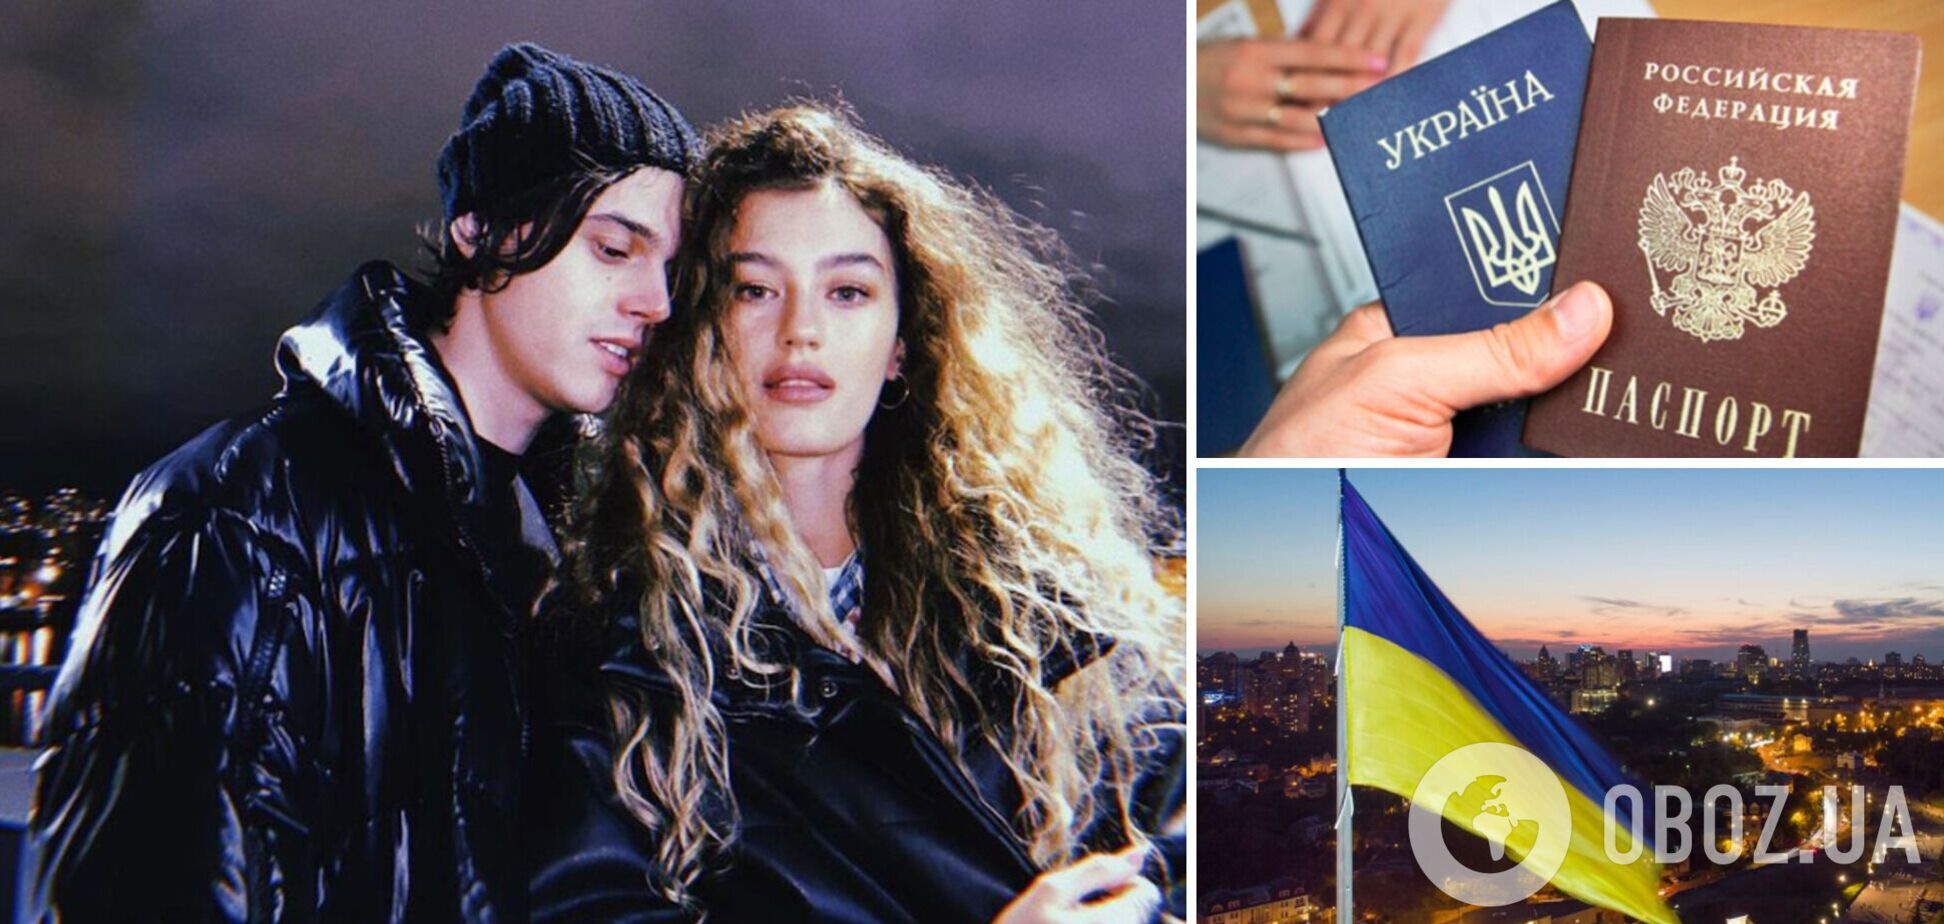 Солістка ВІА Гри та дівчина ALEKSEEV хоче змінити російський паспорт на український